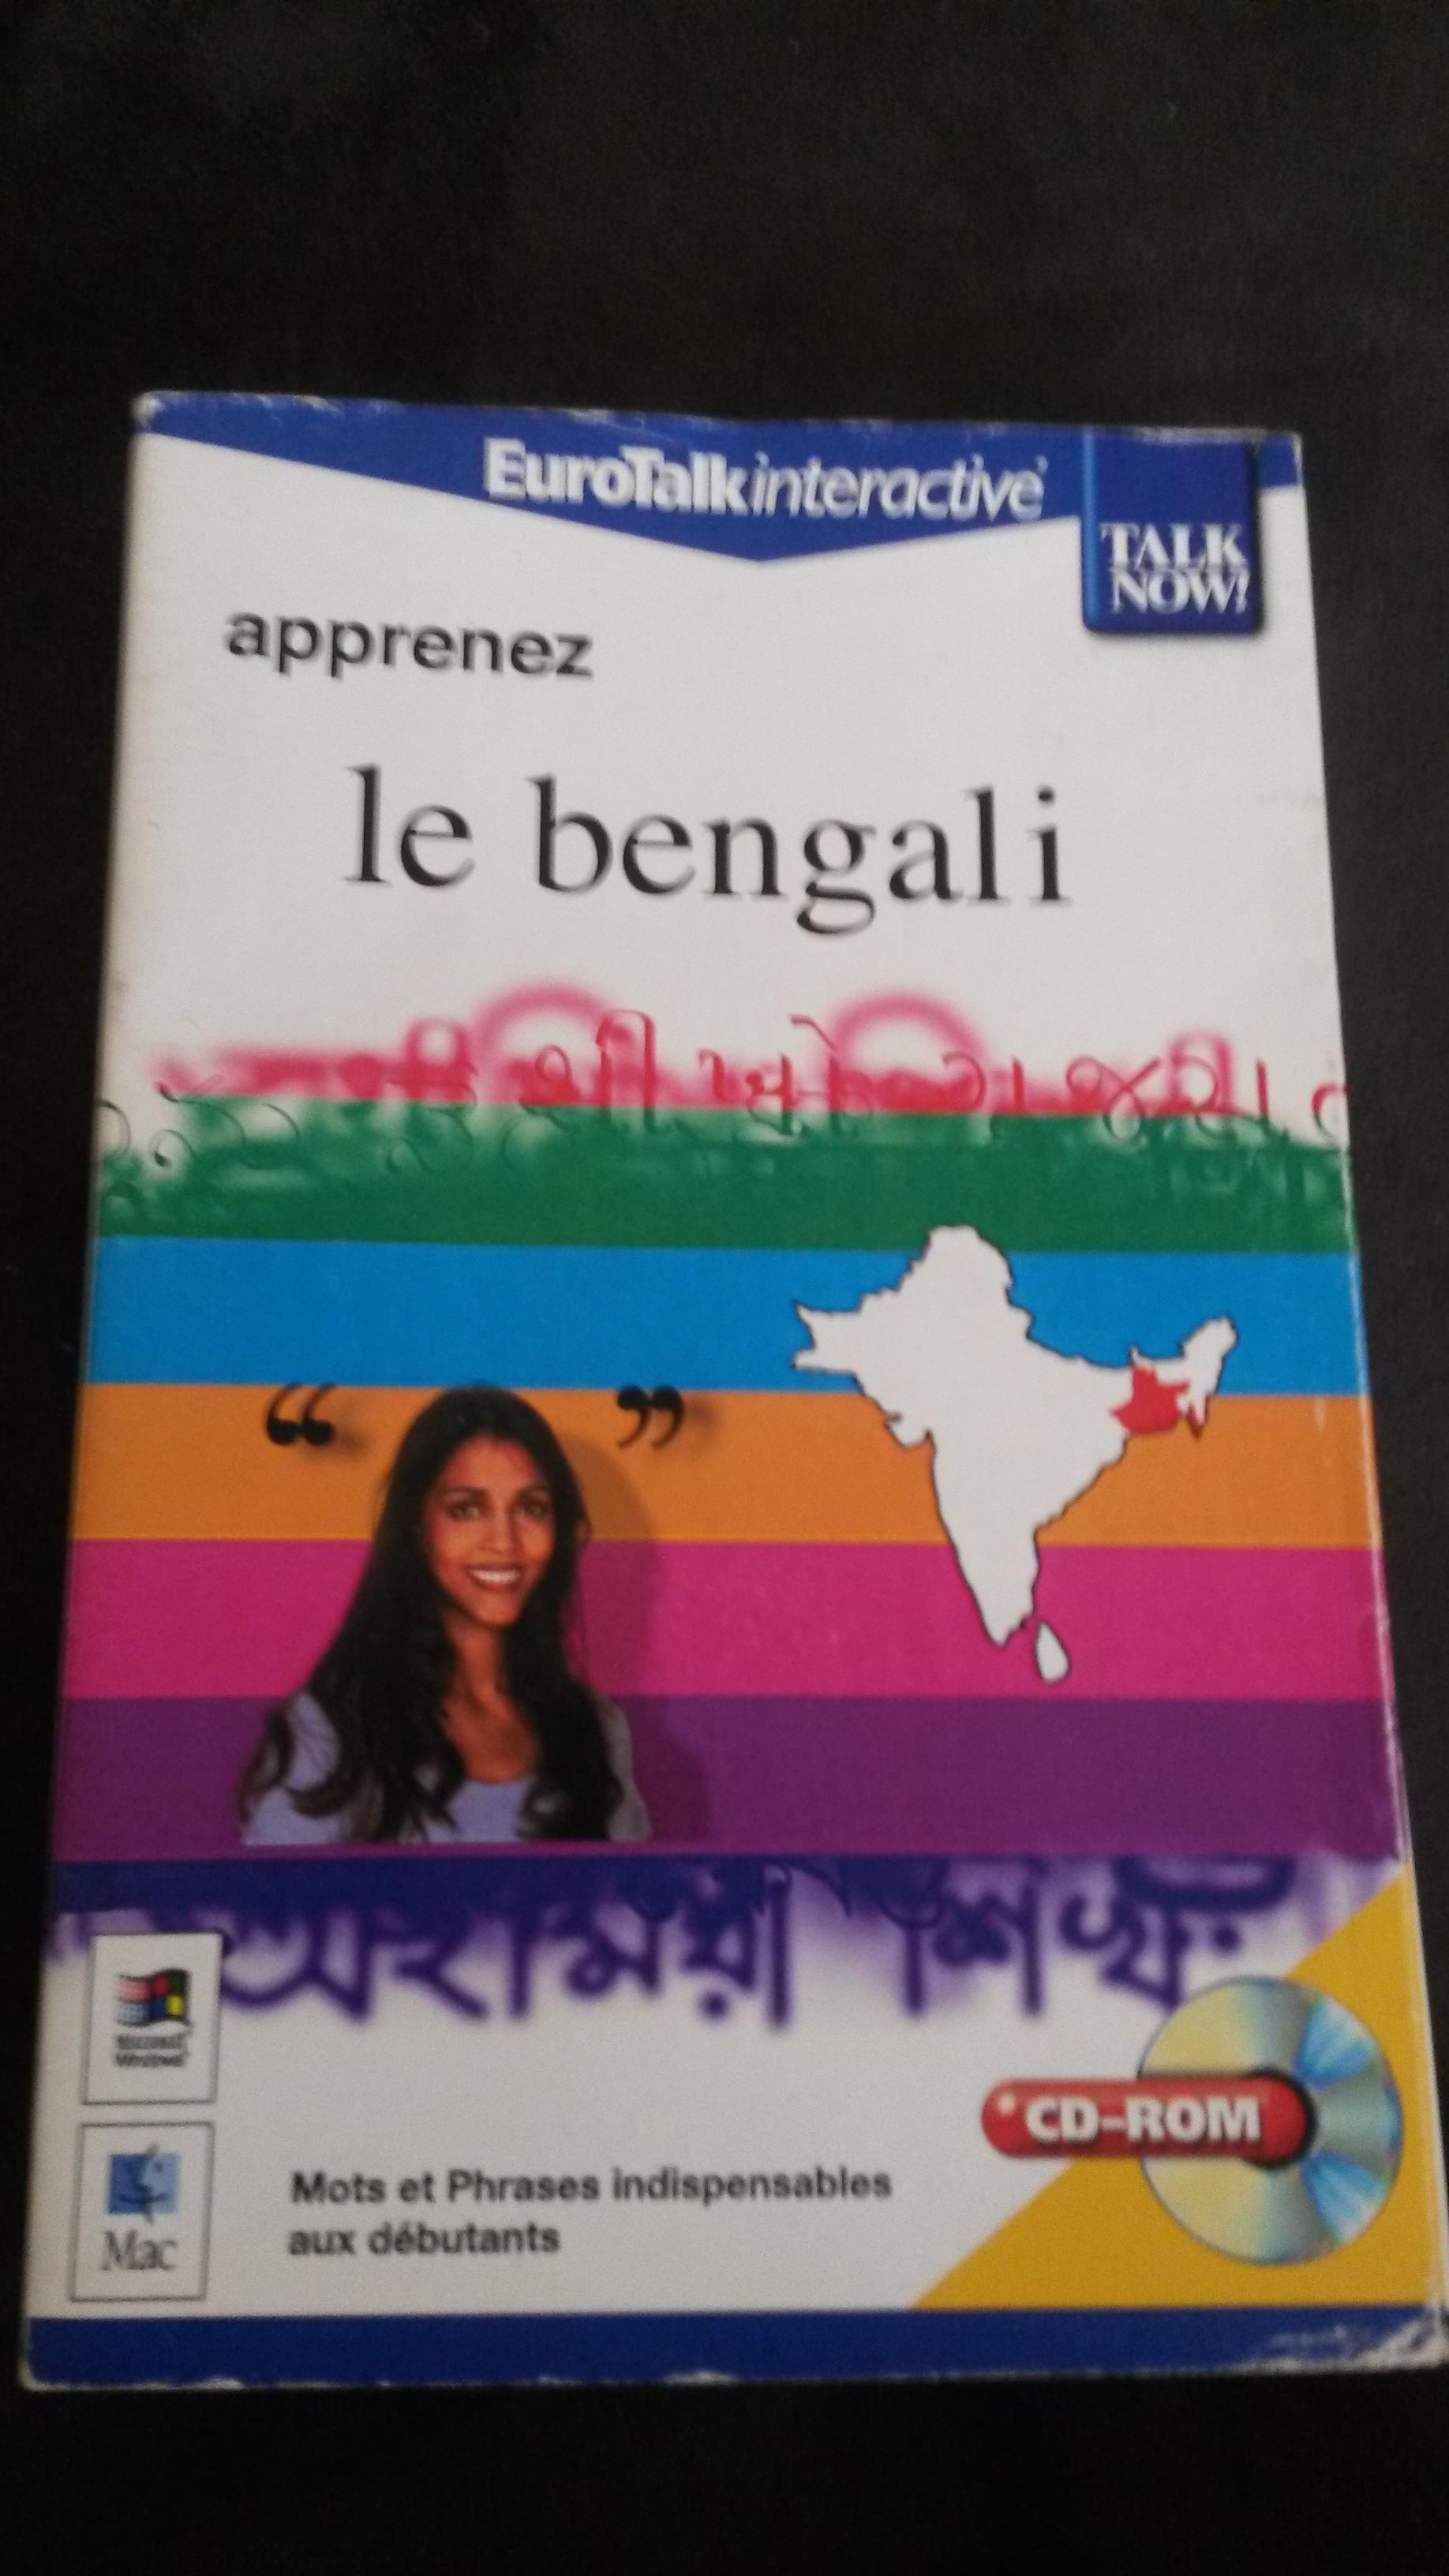 troc de troc dvd pour apprendre le bengali - "talk now" image 0